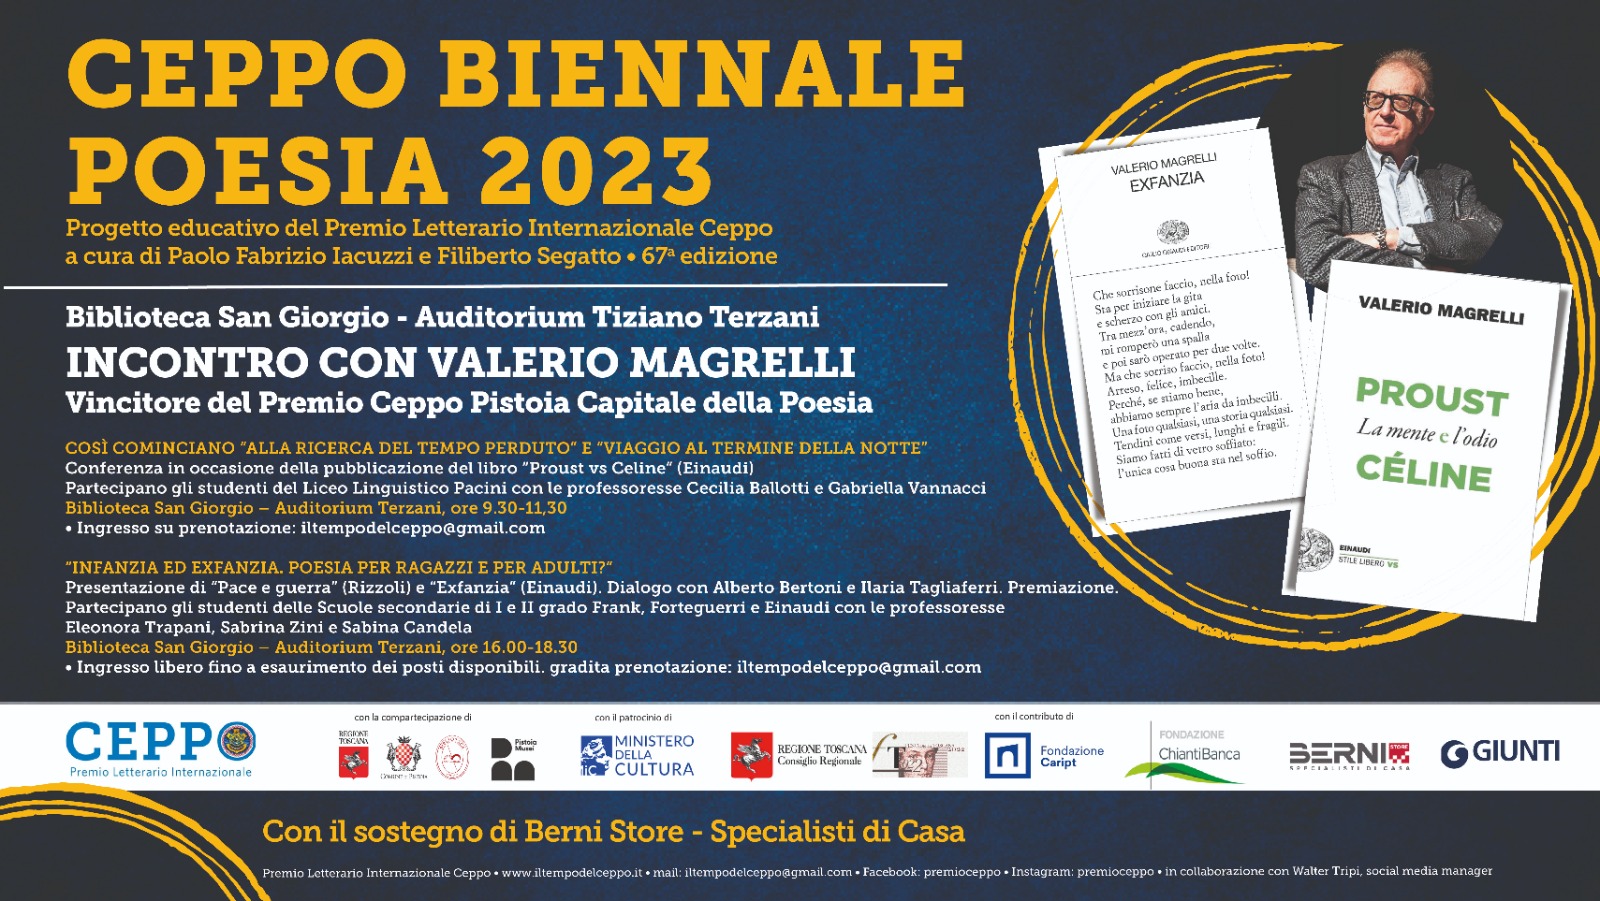 Ceppo Biennale Poesia 2023